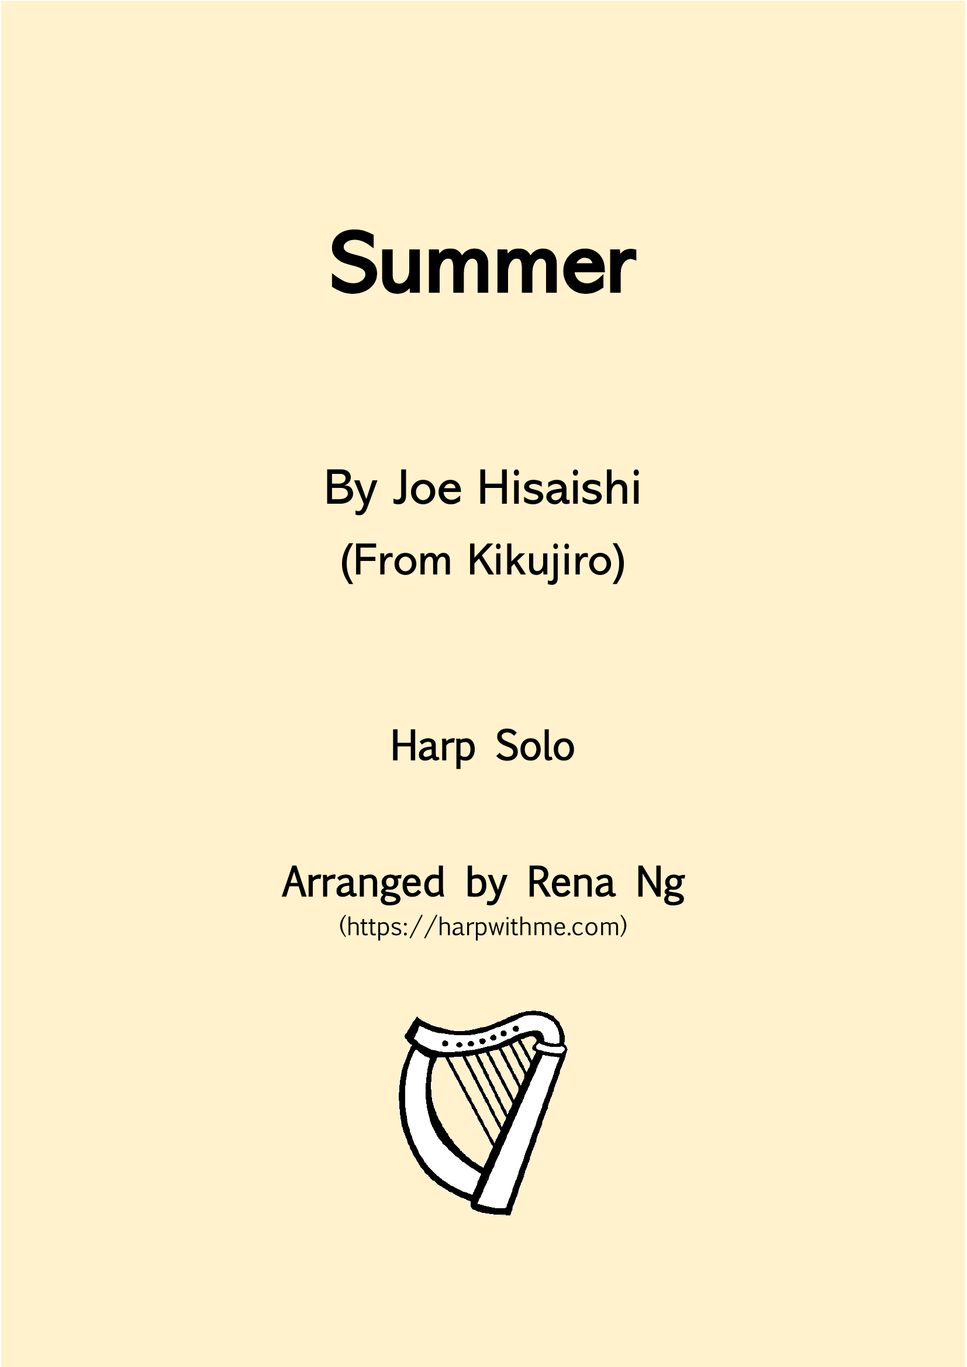 Joe Hisaishi - Summer (Harp Solo) by Harp With Me